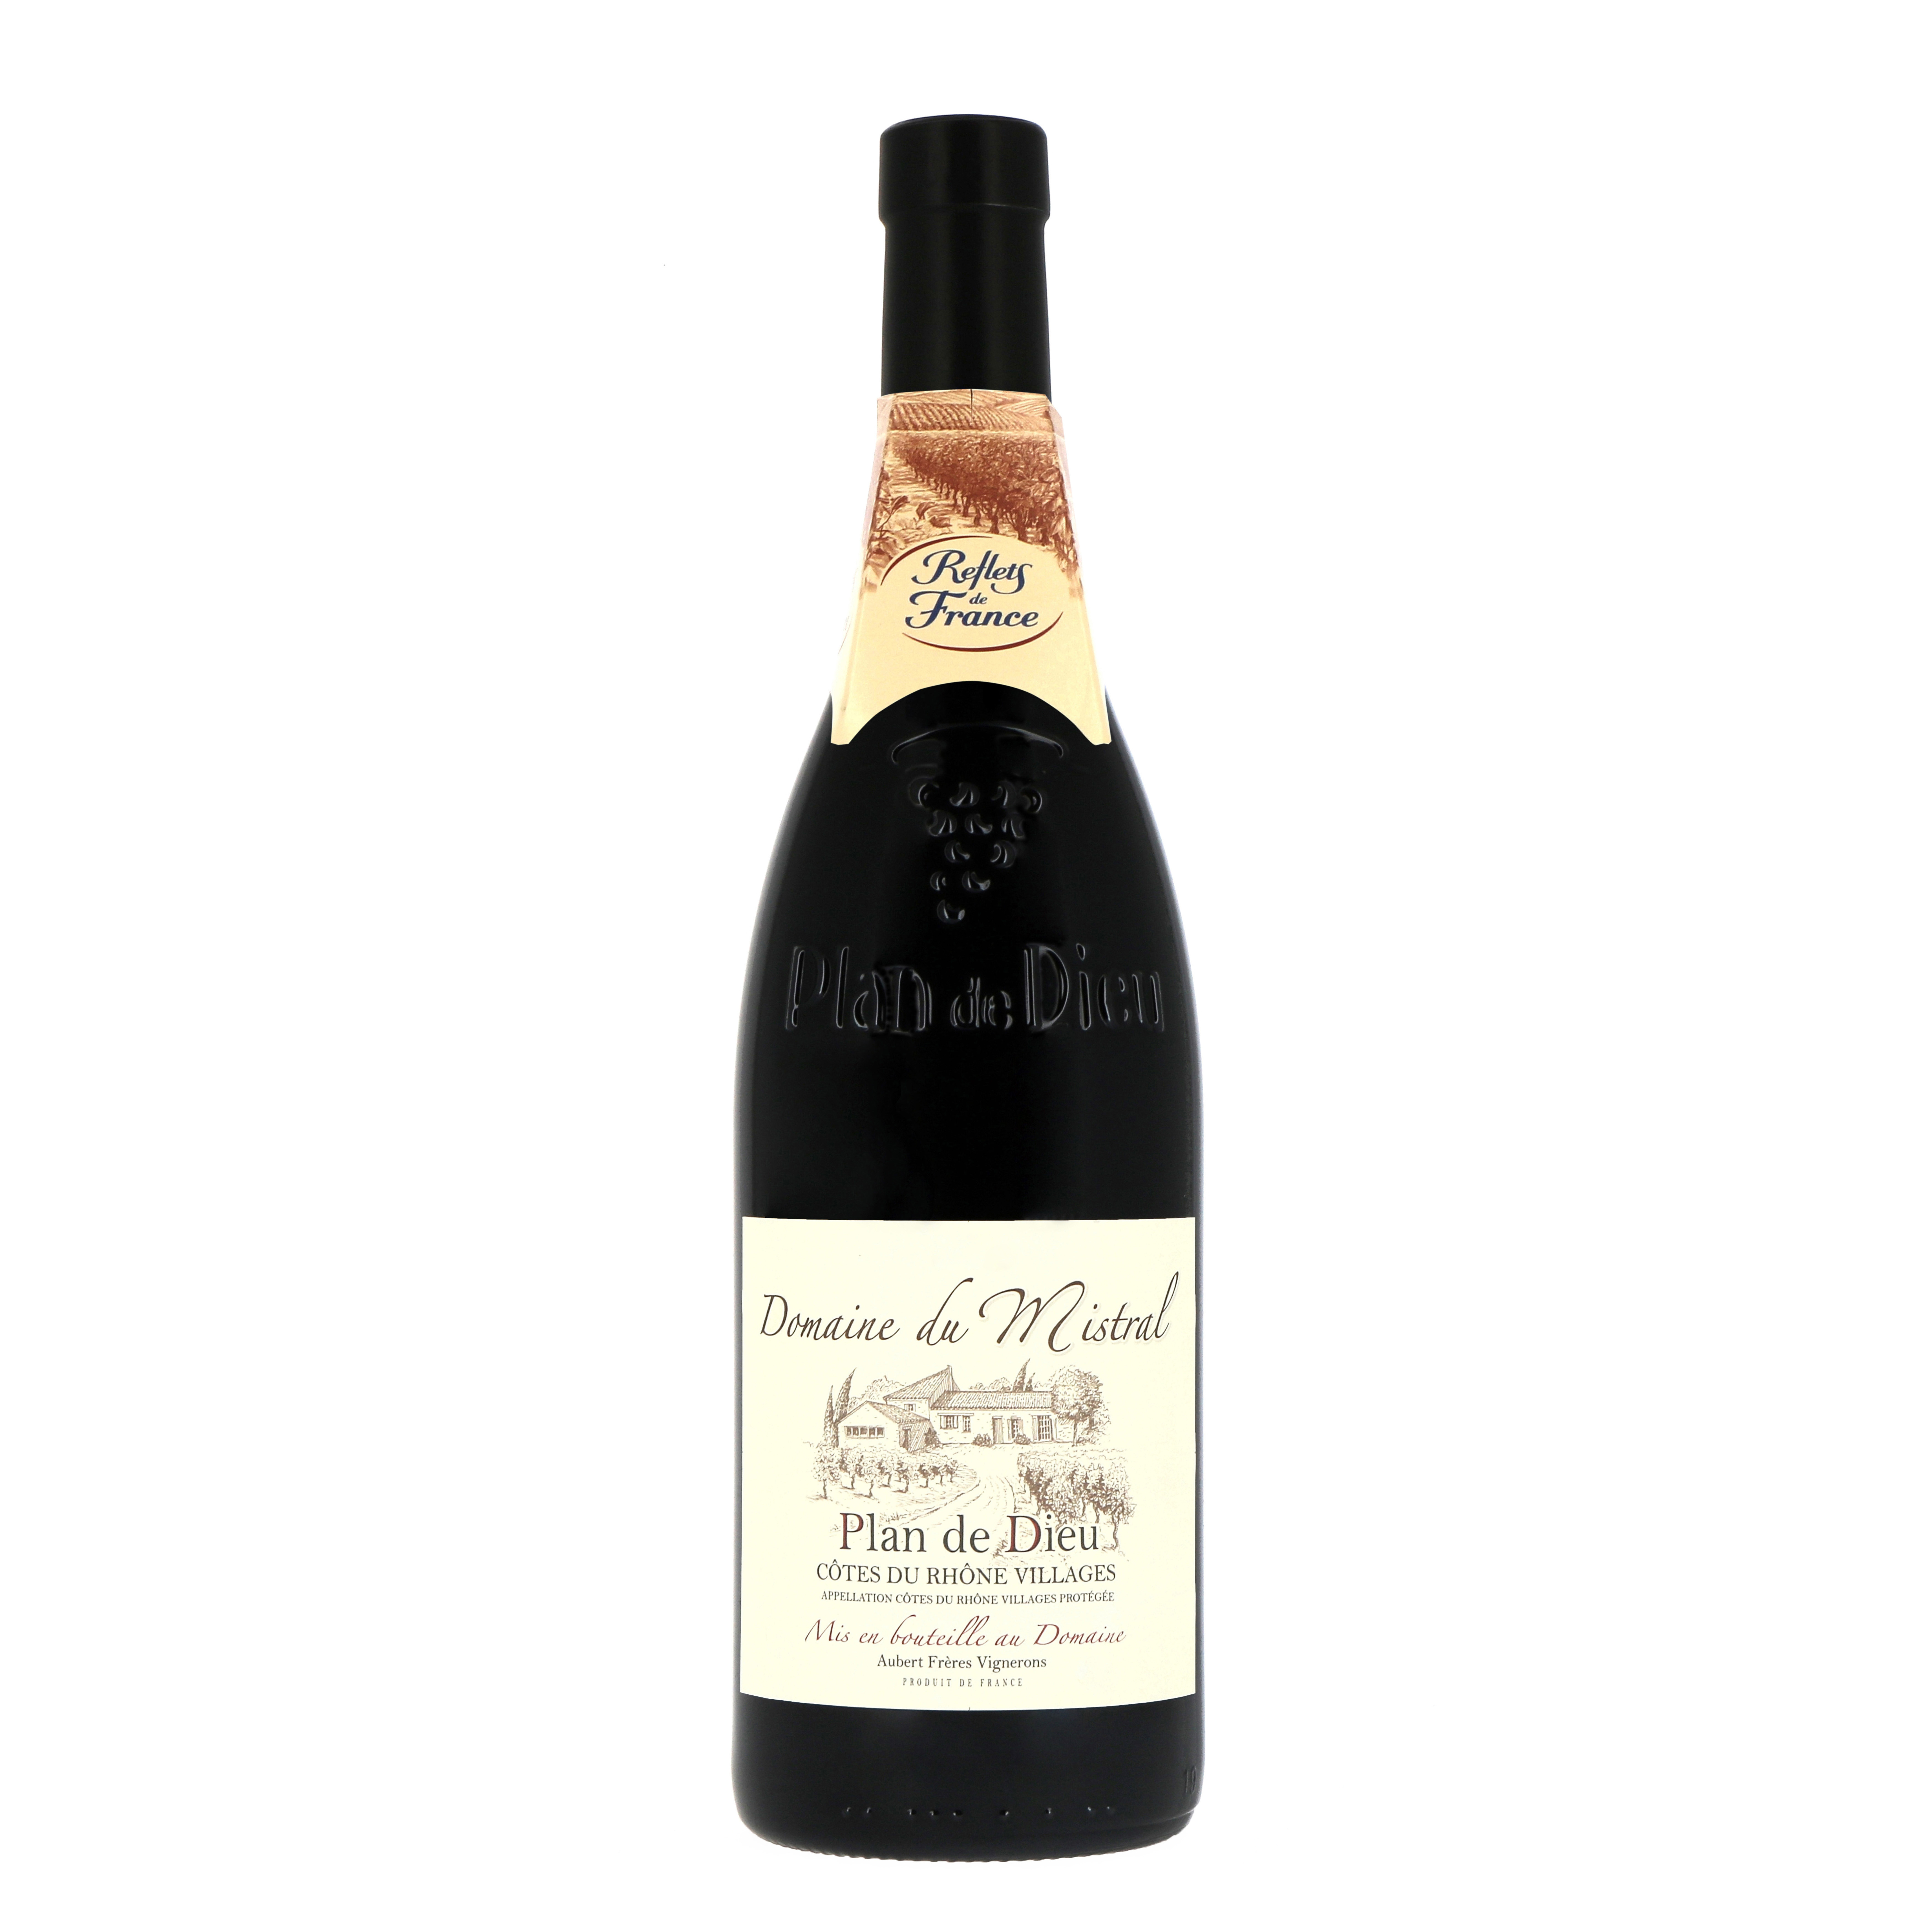 Reflets de France - Vin rouge domaine du mistral côtes du Rhône villages AOC domestique (750 ml)